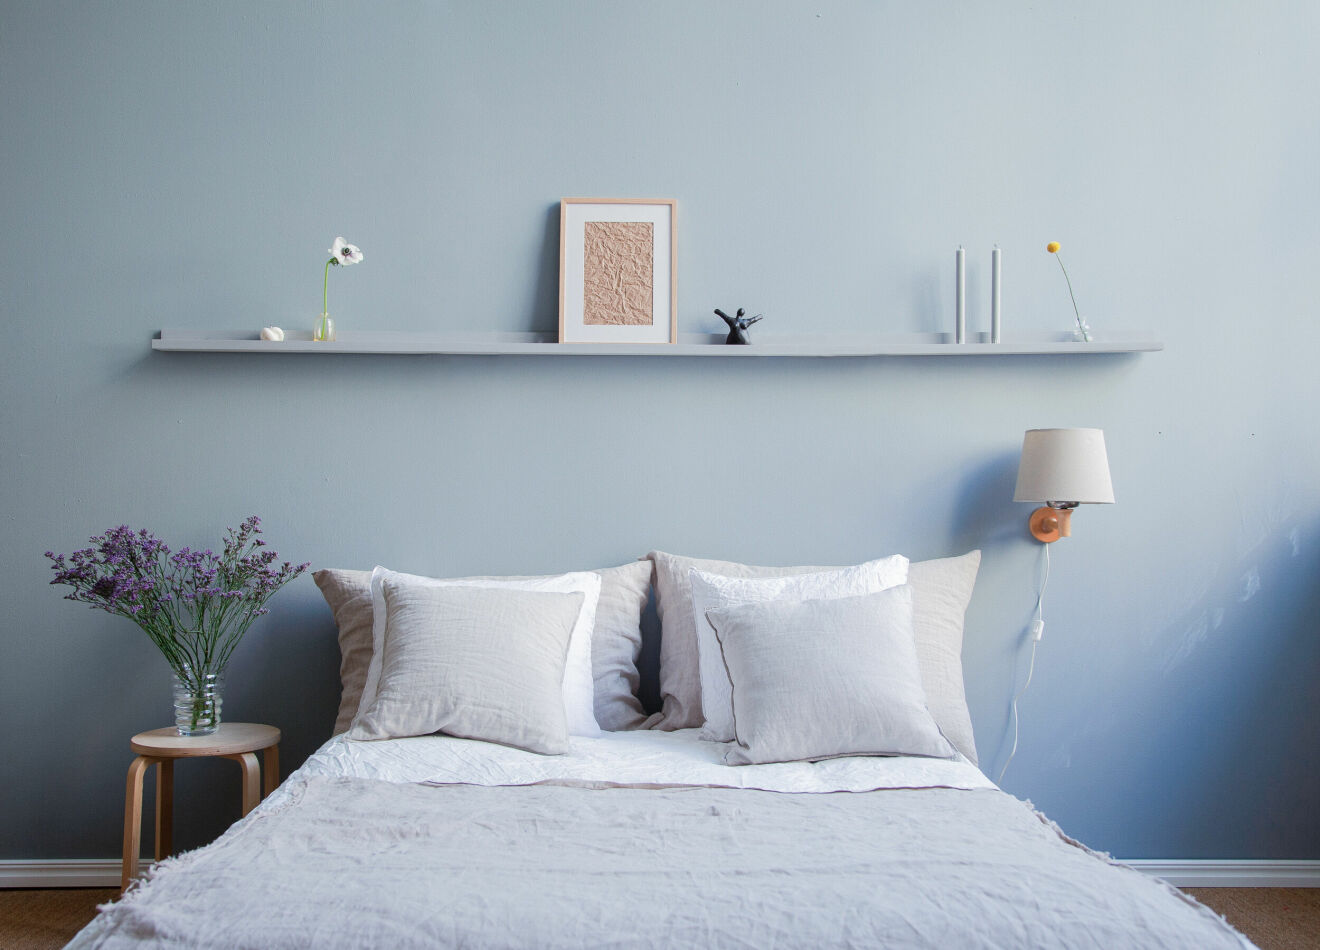 sovrum målat i trendigt ljusblått